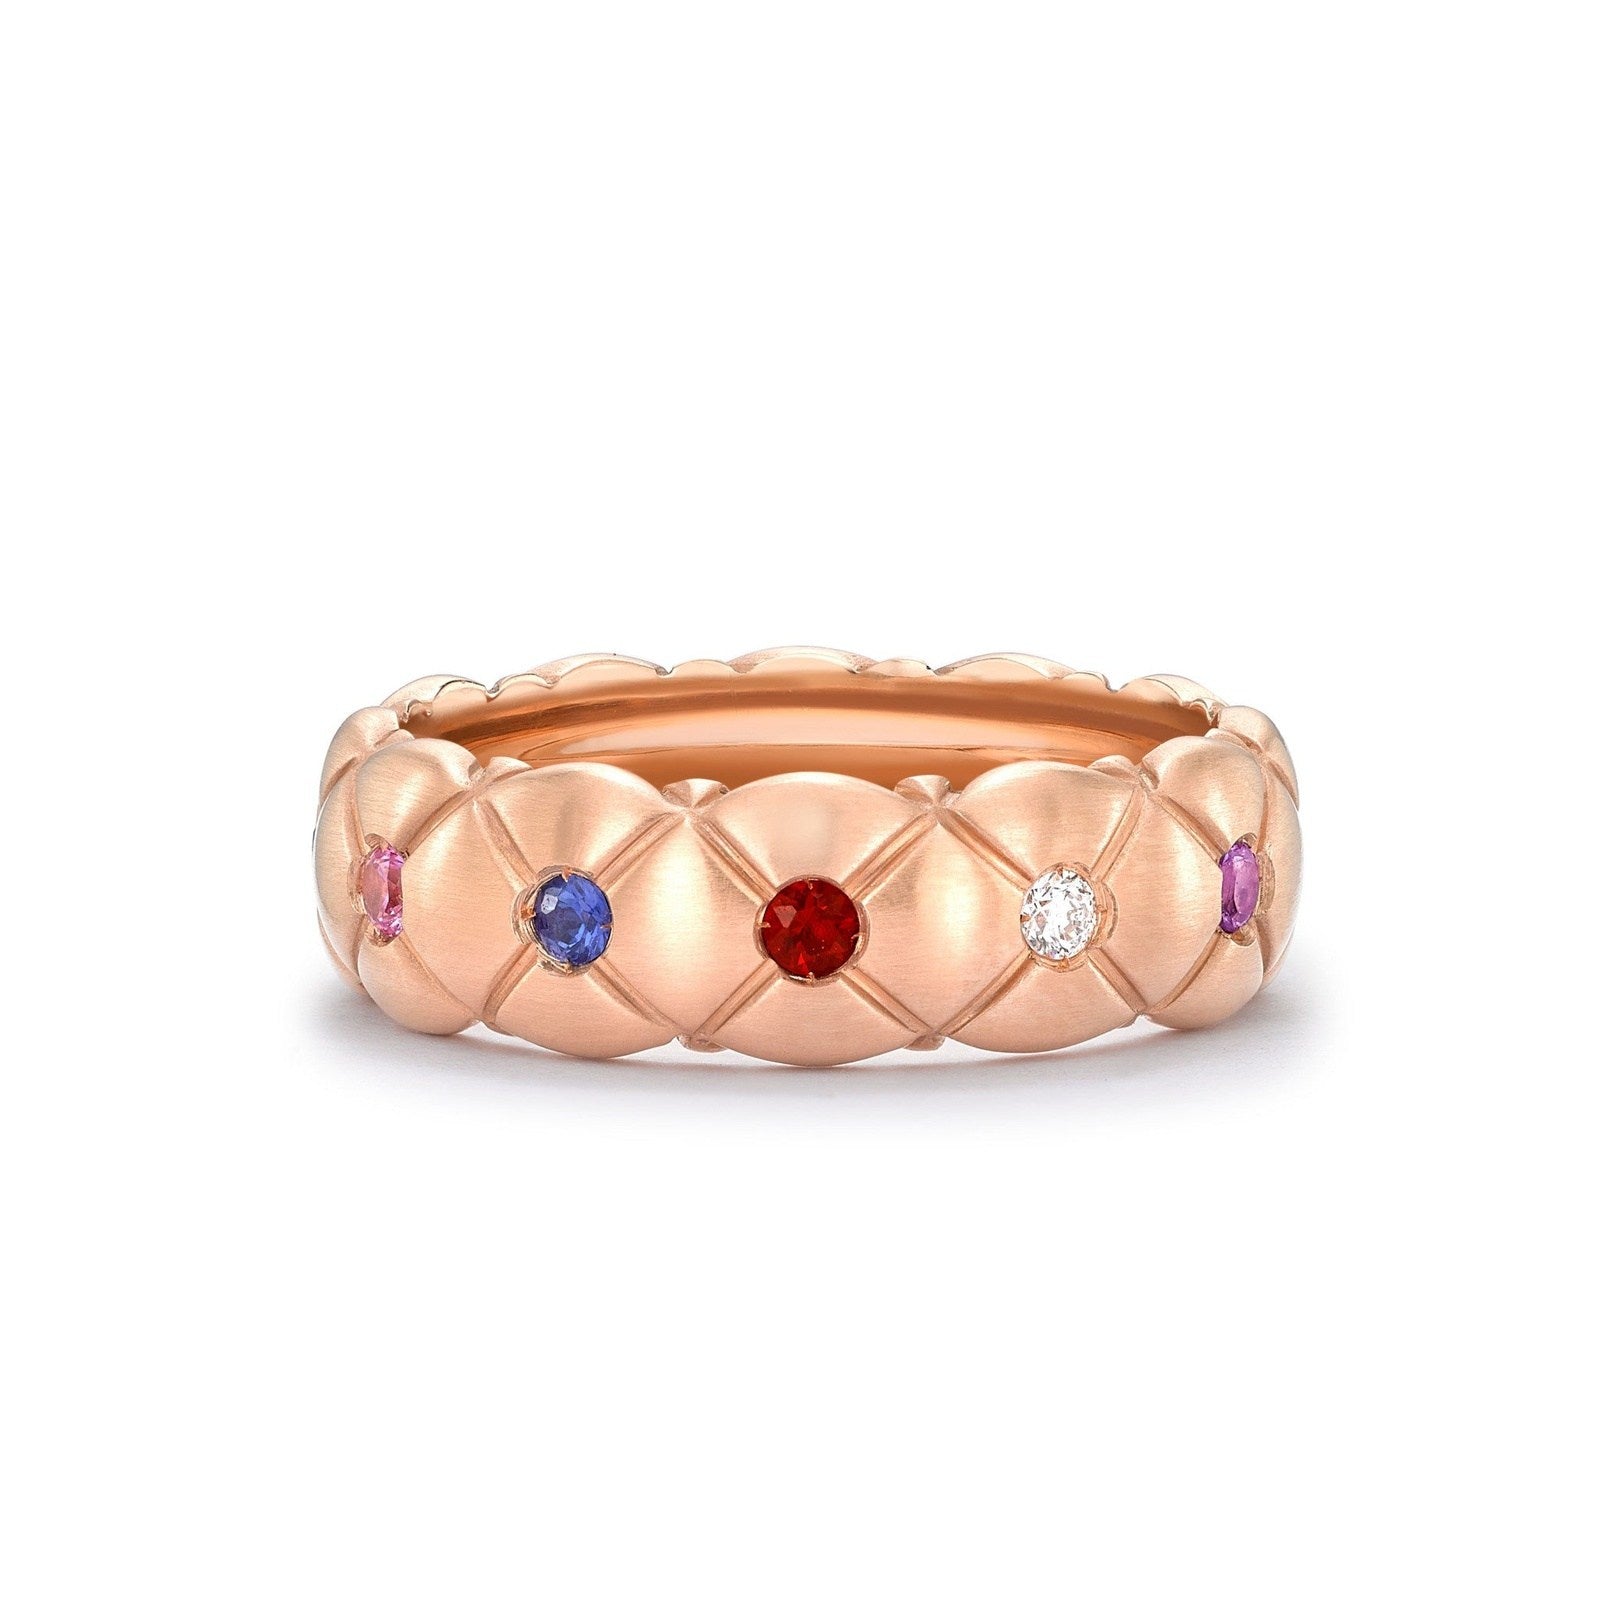 Faberge Treillage Brushed Rose Gold & Multicoloured Gemstone Set Ring - 452RG1337